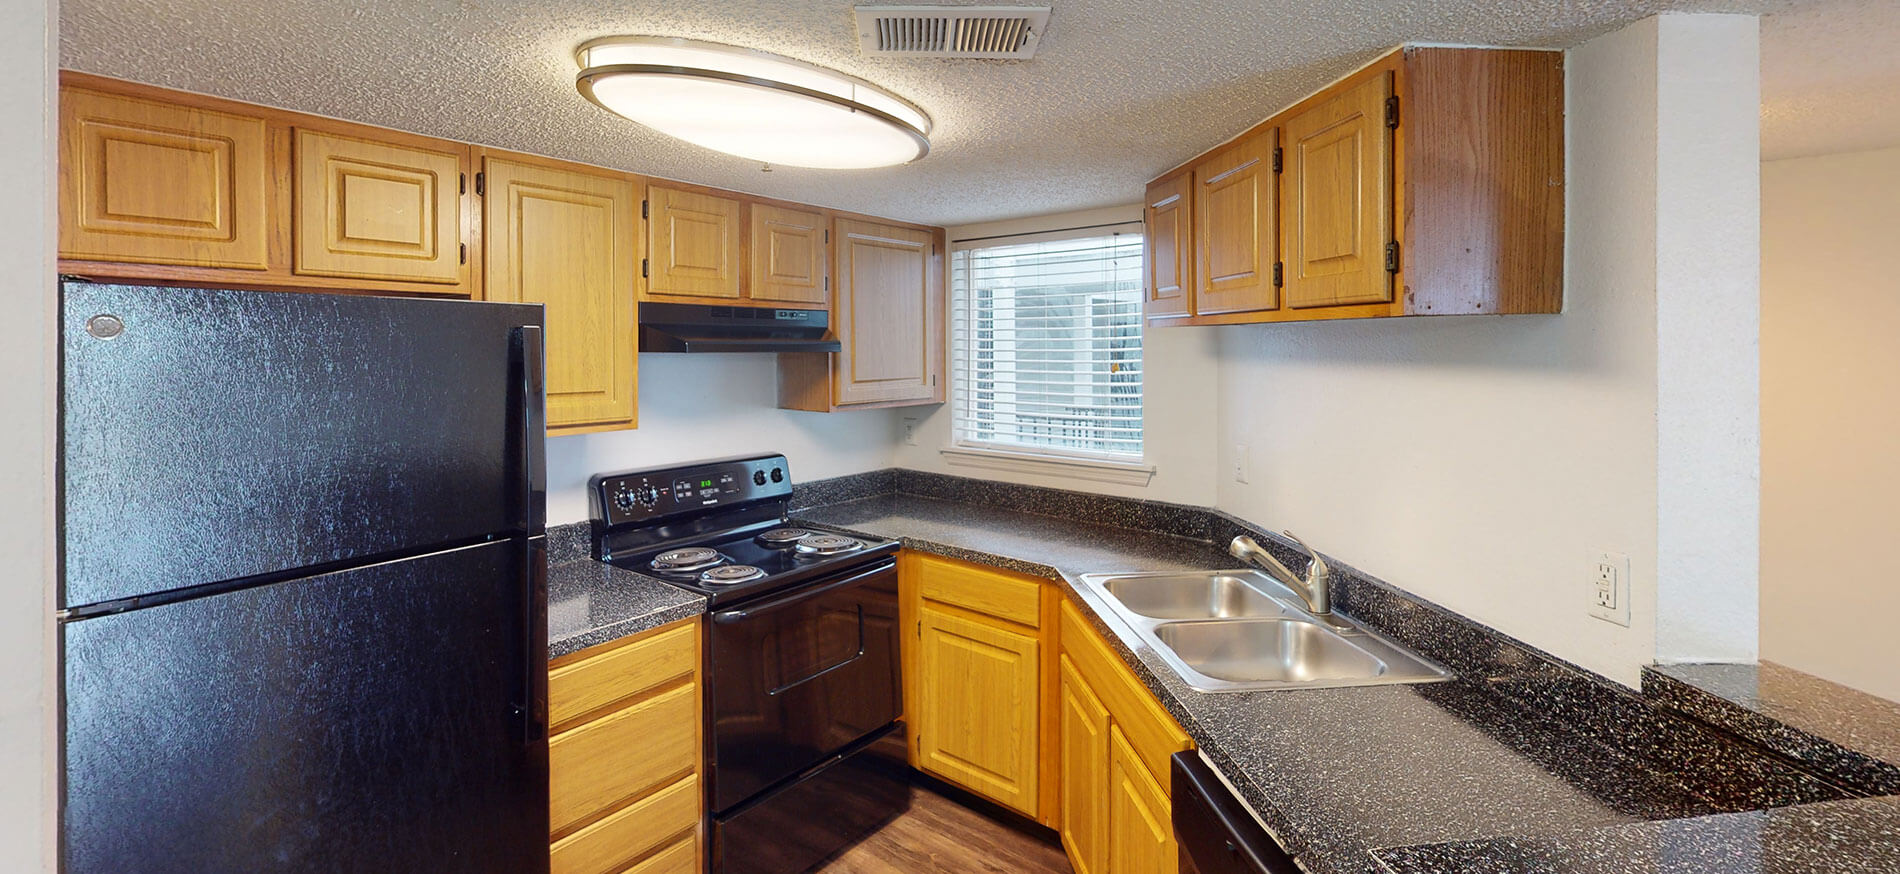 Regatta Shores apartment kitchen